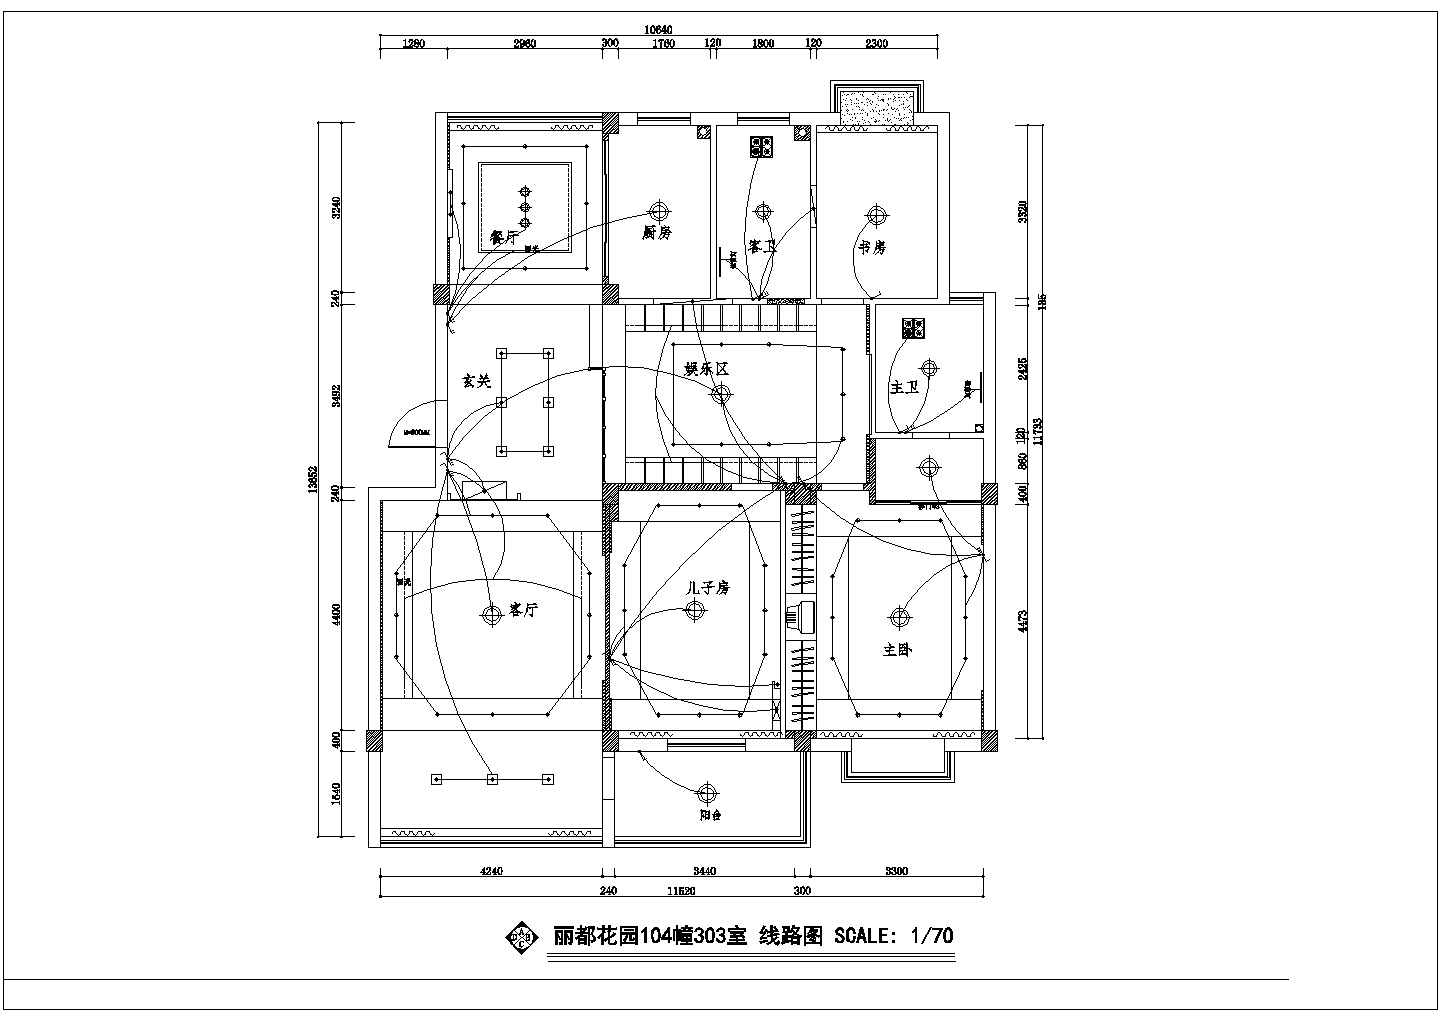 吉林市丽枫家园小区135平米户型全套装修装饰设计CAD图纸